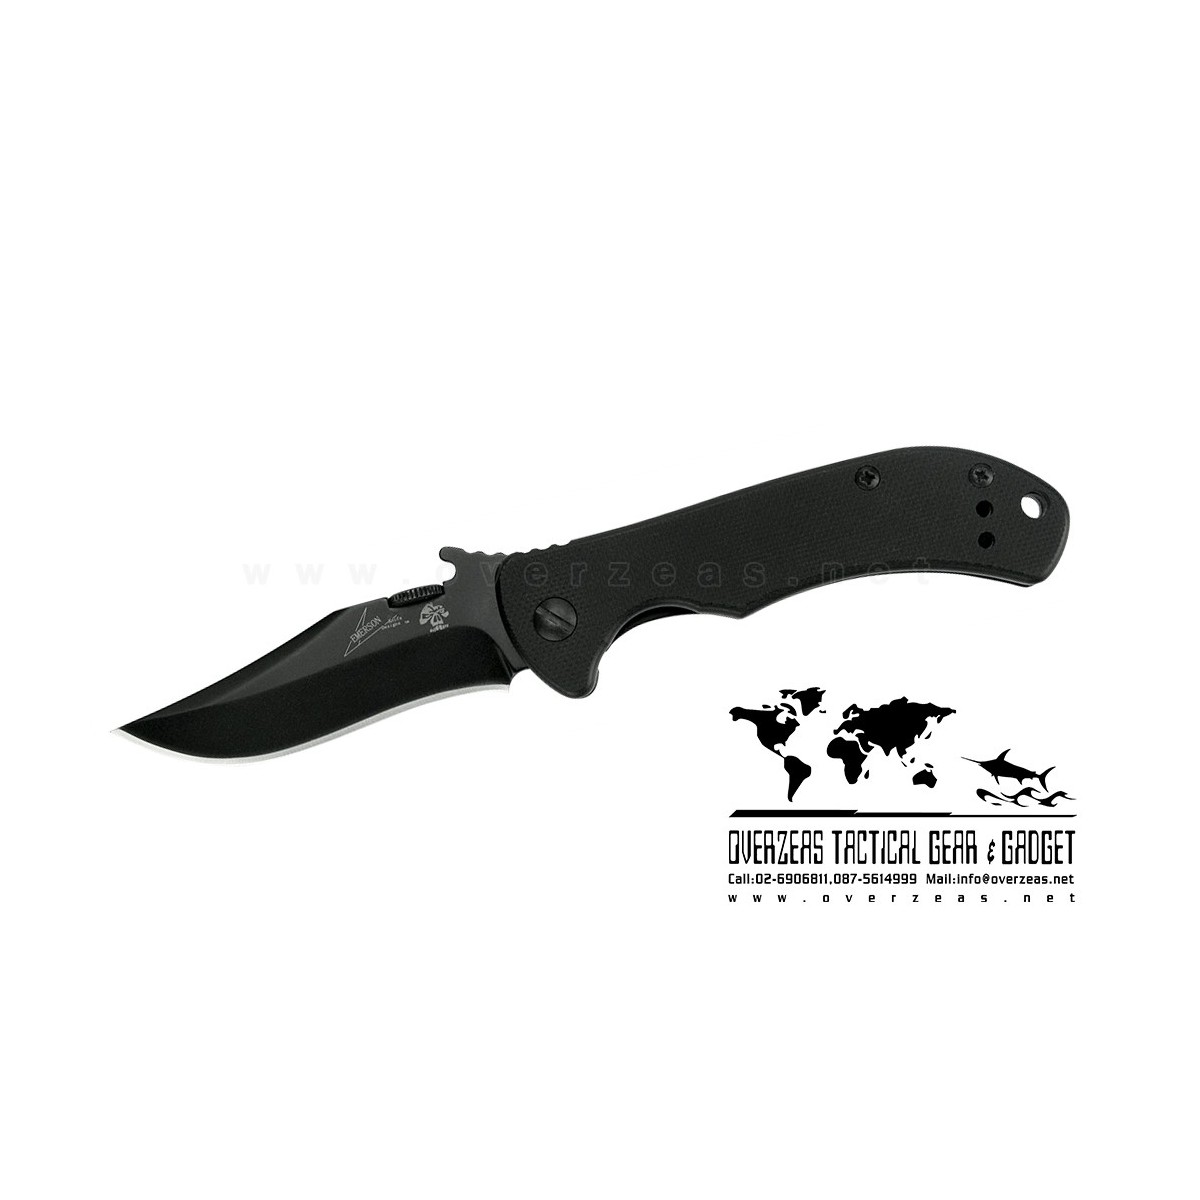 มีดพับ Kershaw CQC-2K Emerson Knife (2.75" Black Plain) 6024BLK